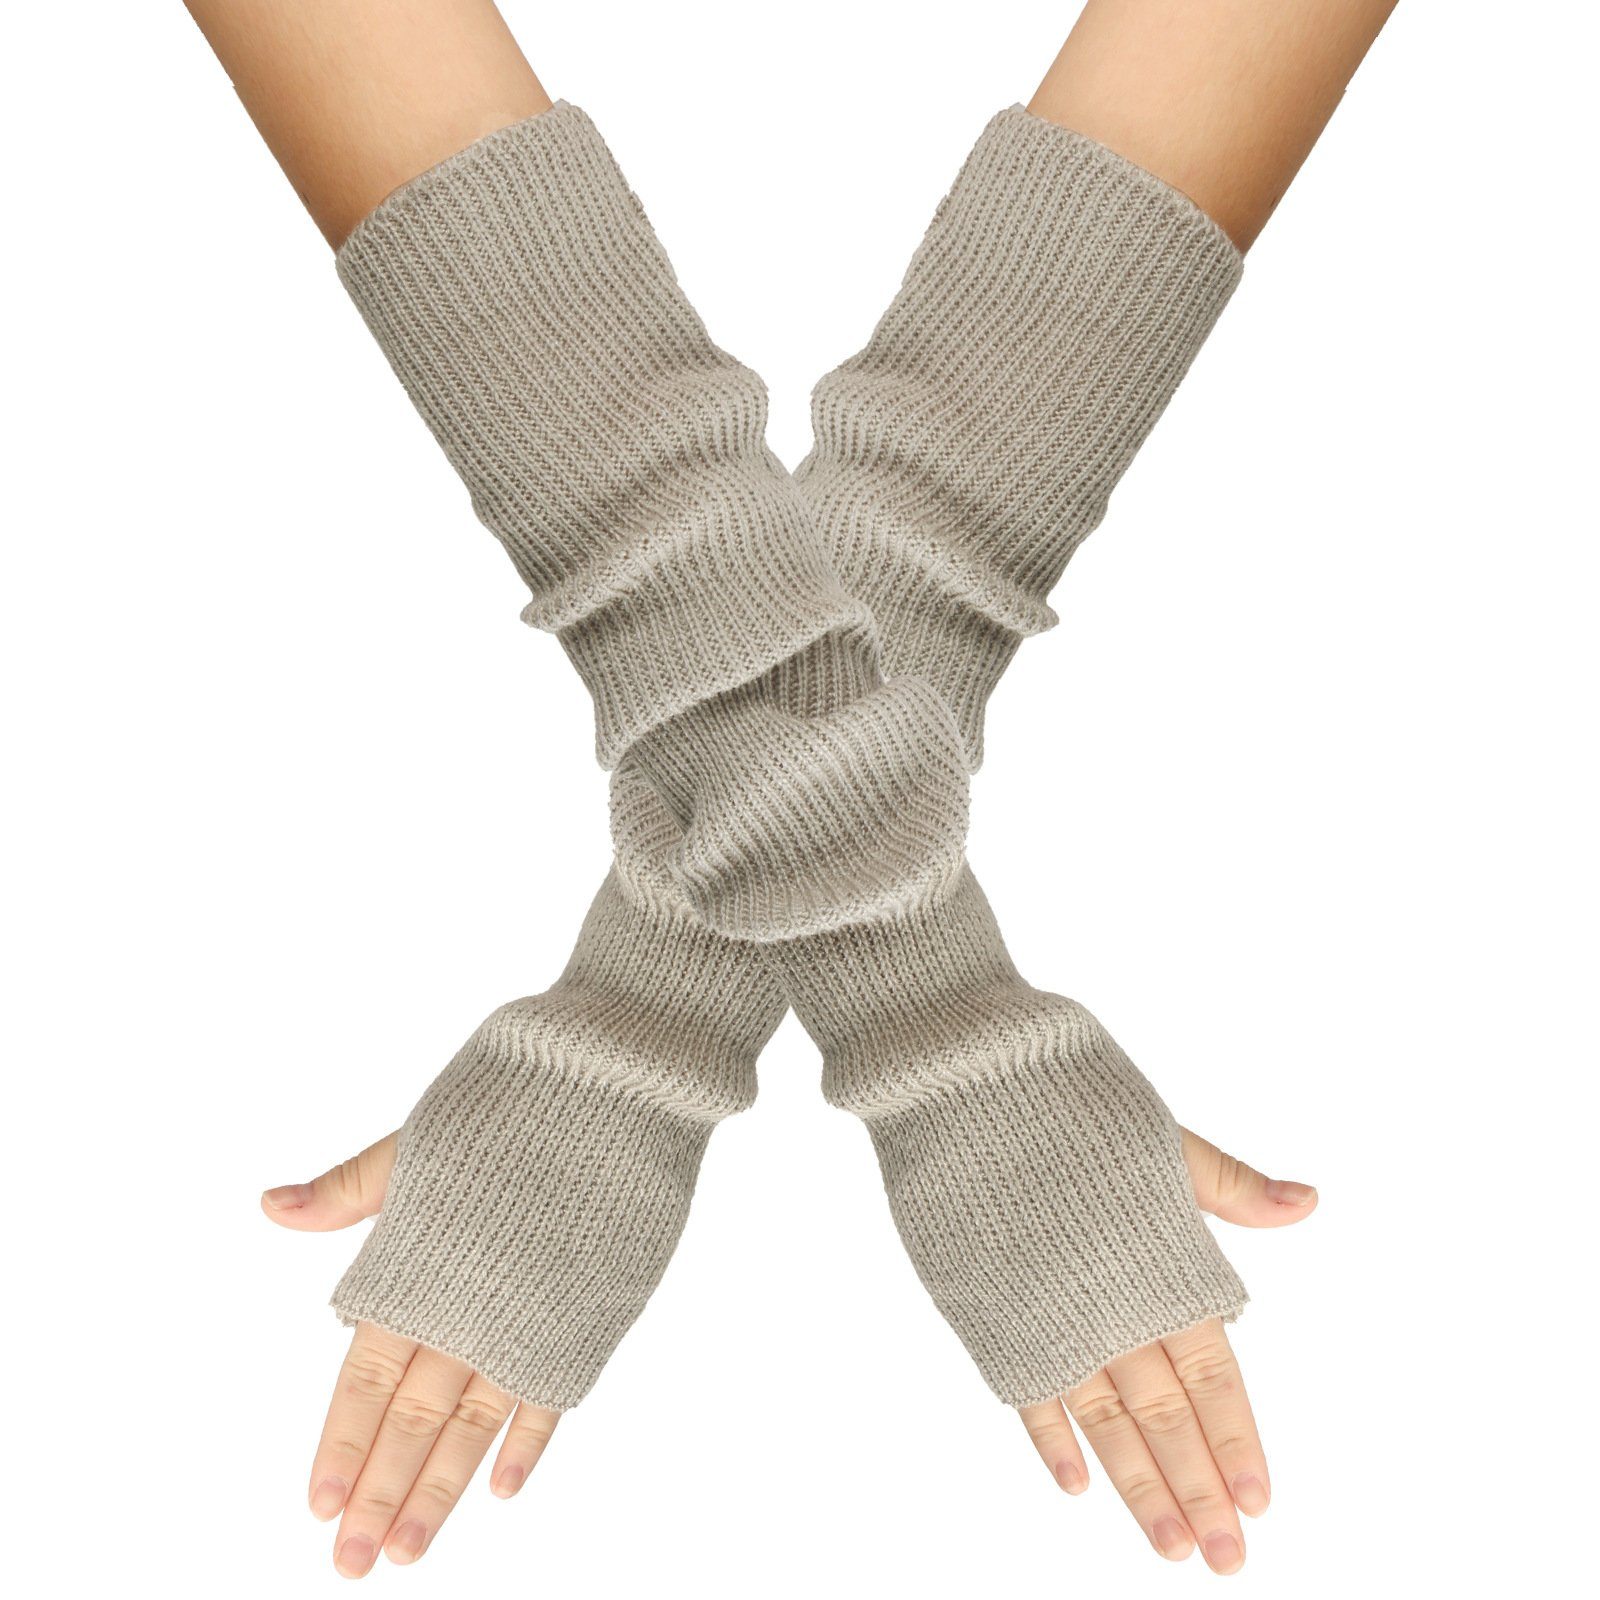 XDeer Handschuhe,Winter Damen Strickhandschuhe Fingerlose gray+beige Stricken Armstulpen für Paar Lange mit Daumenloch Halbfingerhandschuhe 2